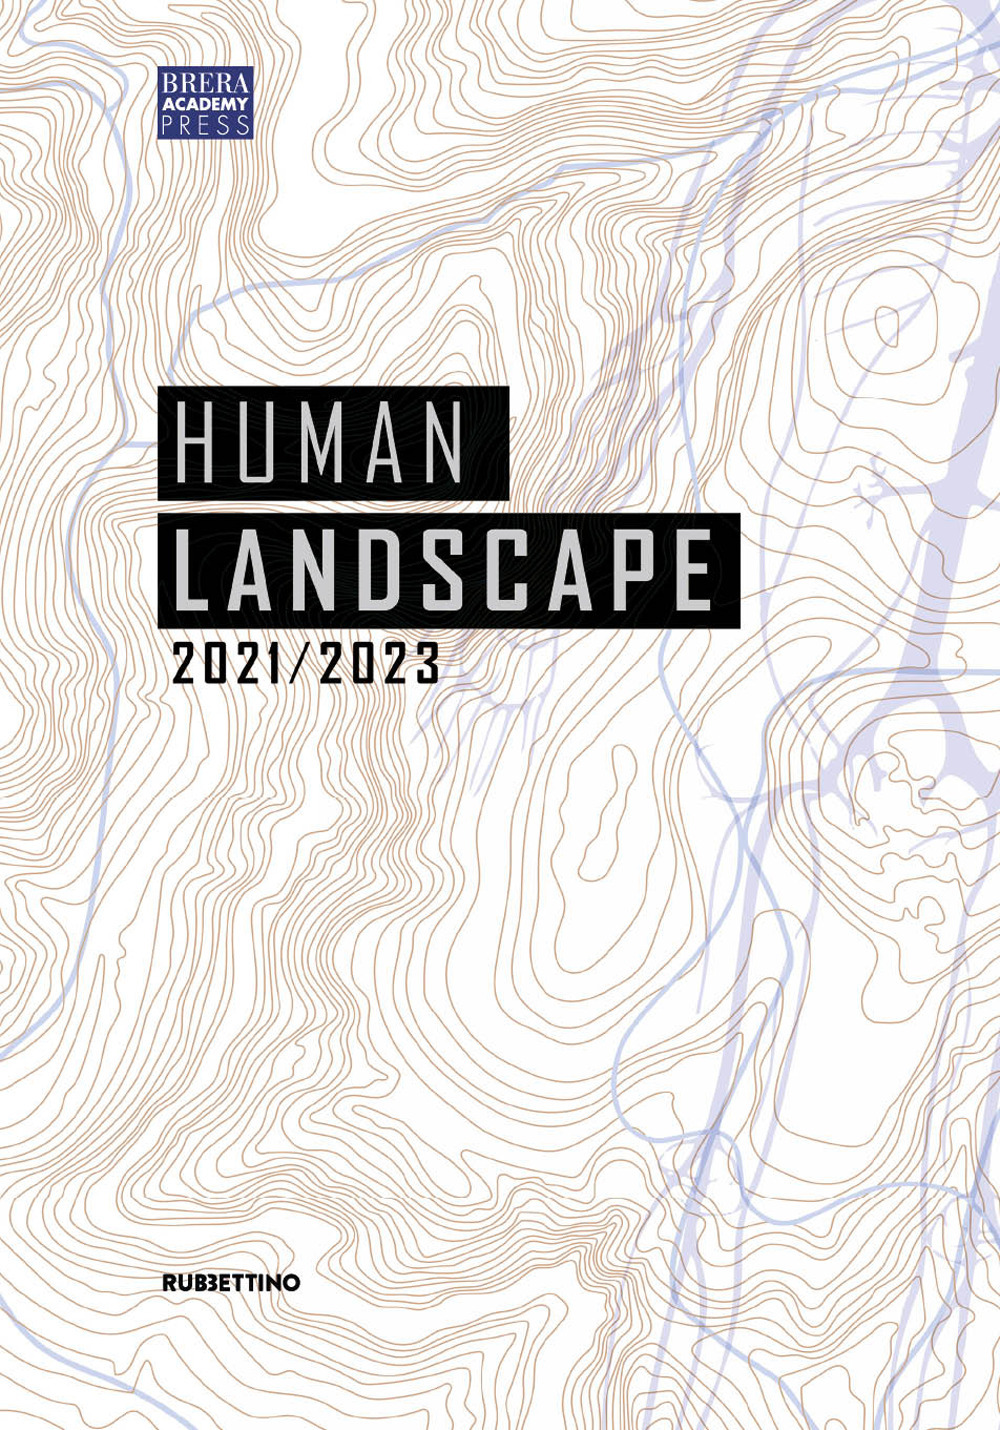 Human landscape 2021-2023